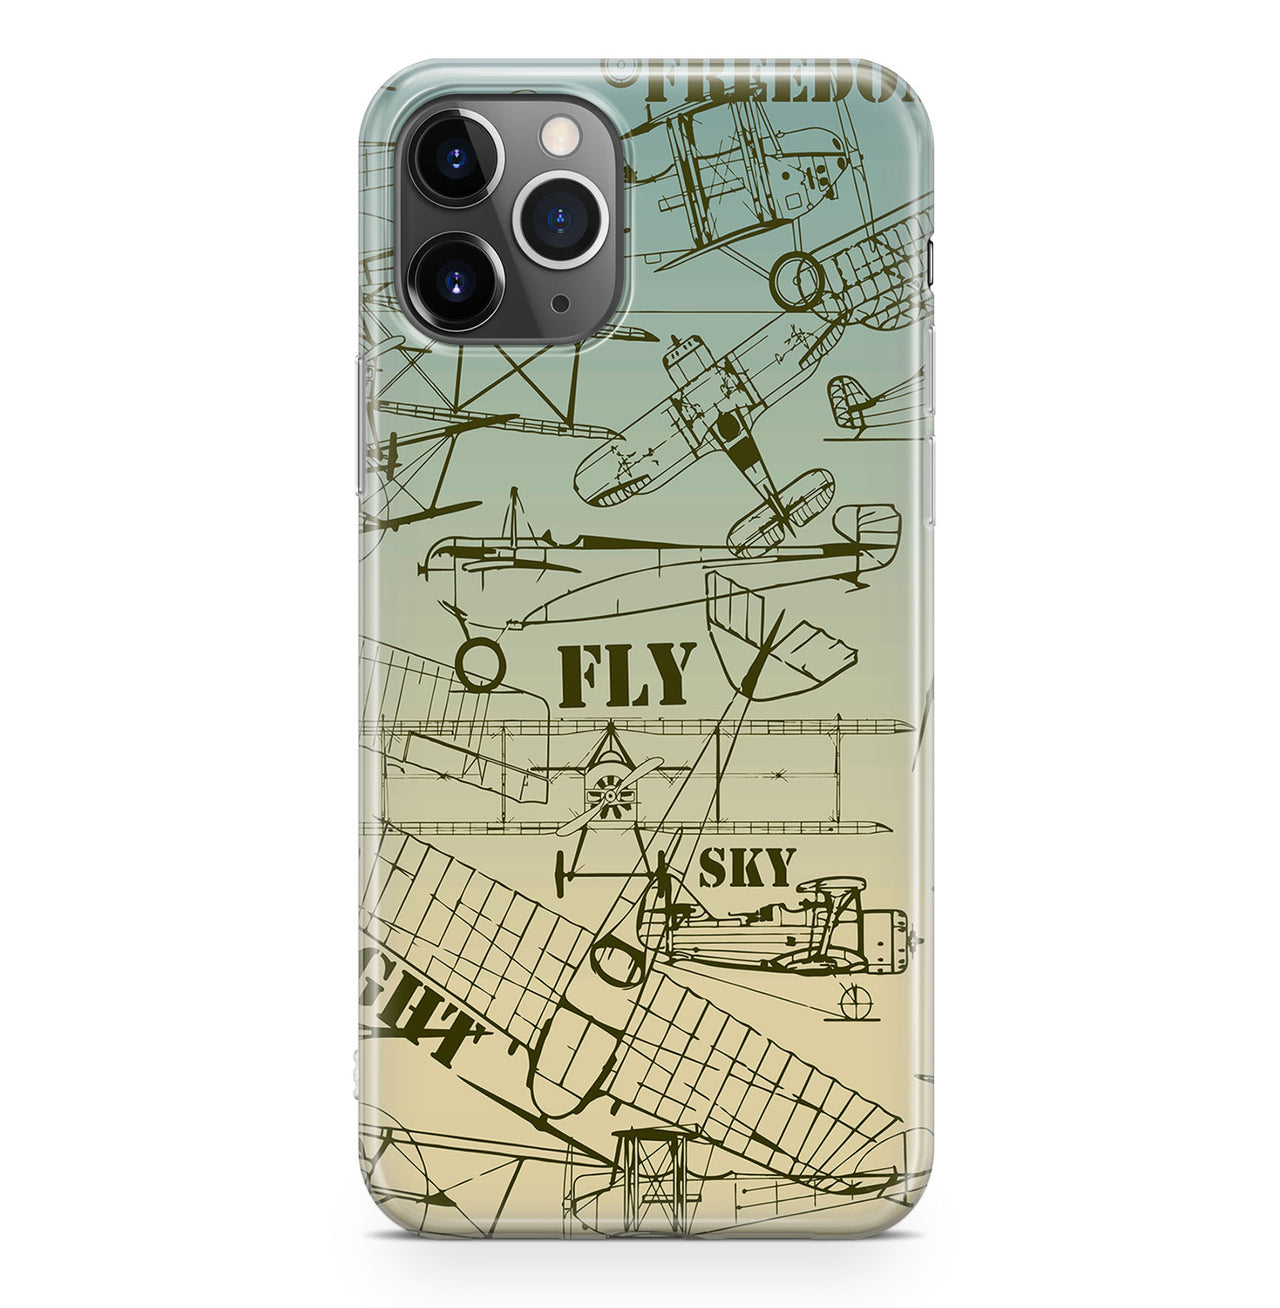 Retro Airplanes & Text Designed iPhone Cases